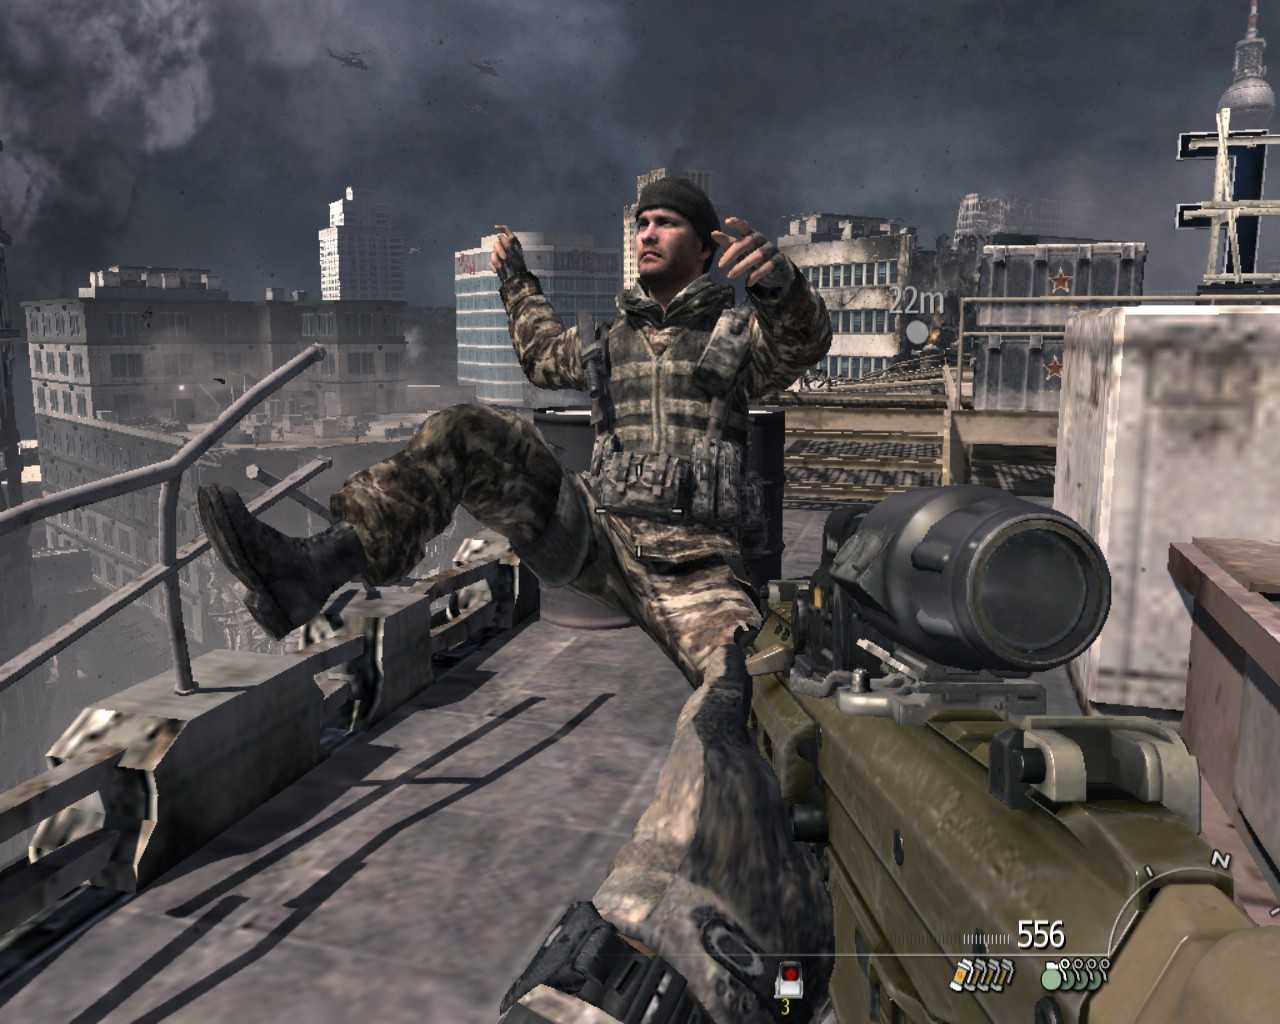 Call Of Duty – это один из крупнейших игровых брендов, известных благодаря огромному выбору оружия, зубодробительному экшну, которому позавидовал бы даже Терминатор, и невероятно затягивающему мультиплеерному режиму